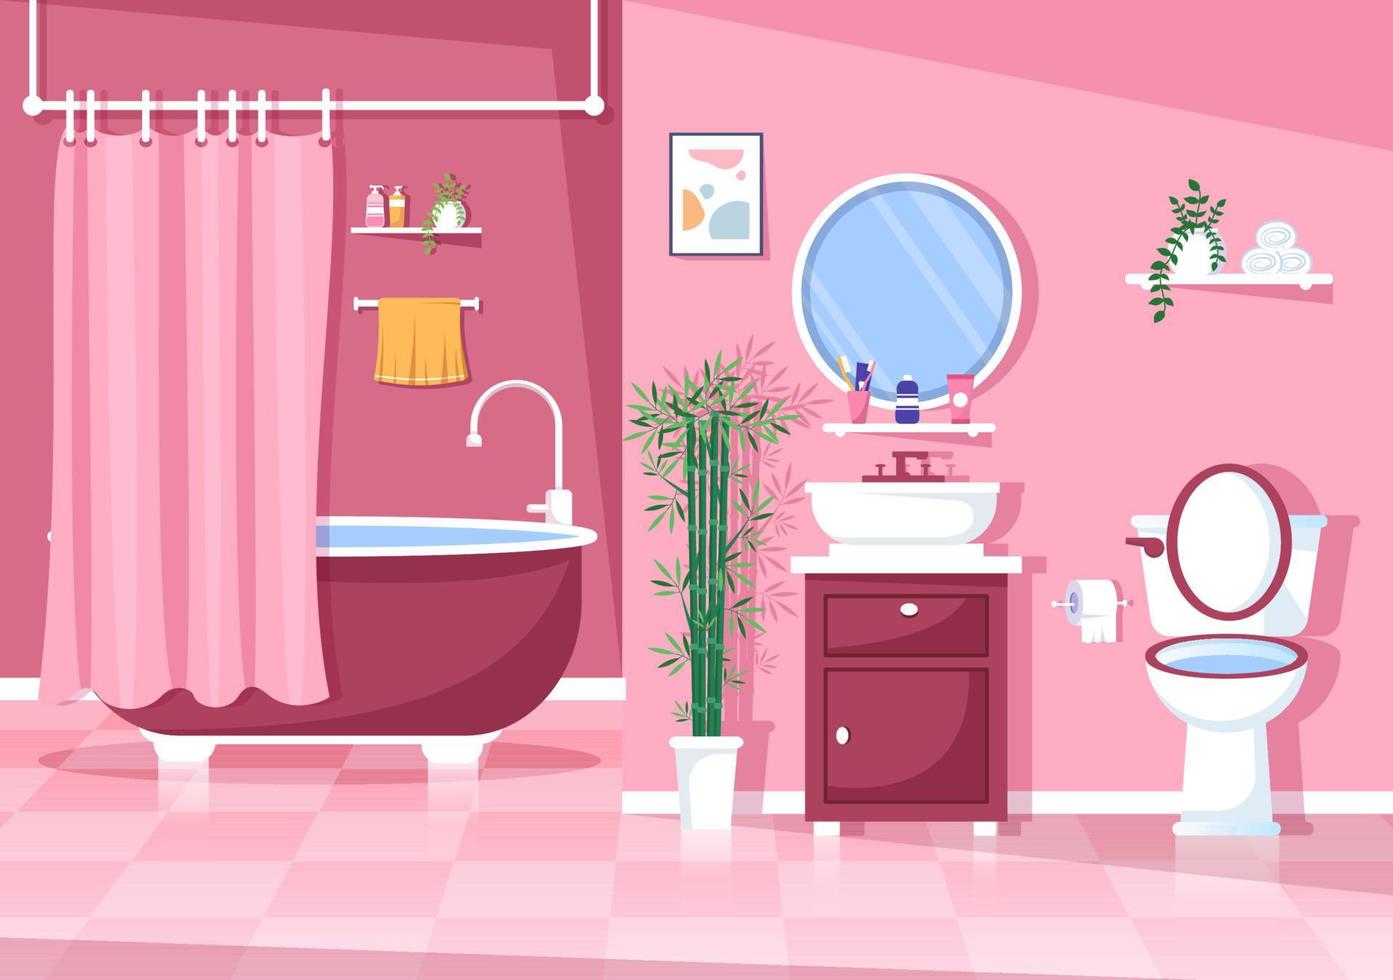 moderna badrumsmöbler interiör bakgrundsillustration med badkar, kran toalett handfat för att duscha och städa upp i platt färgstil vektor